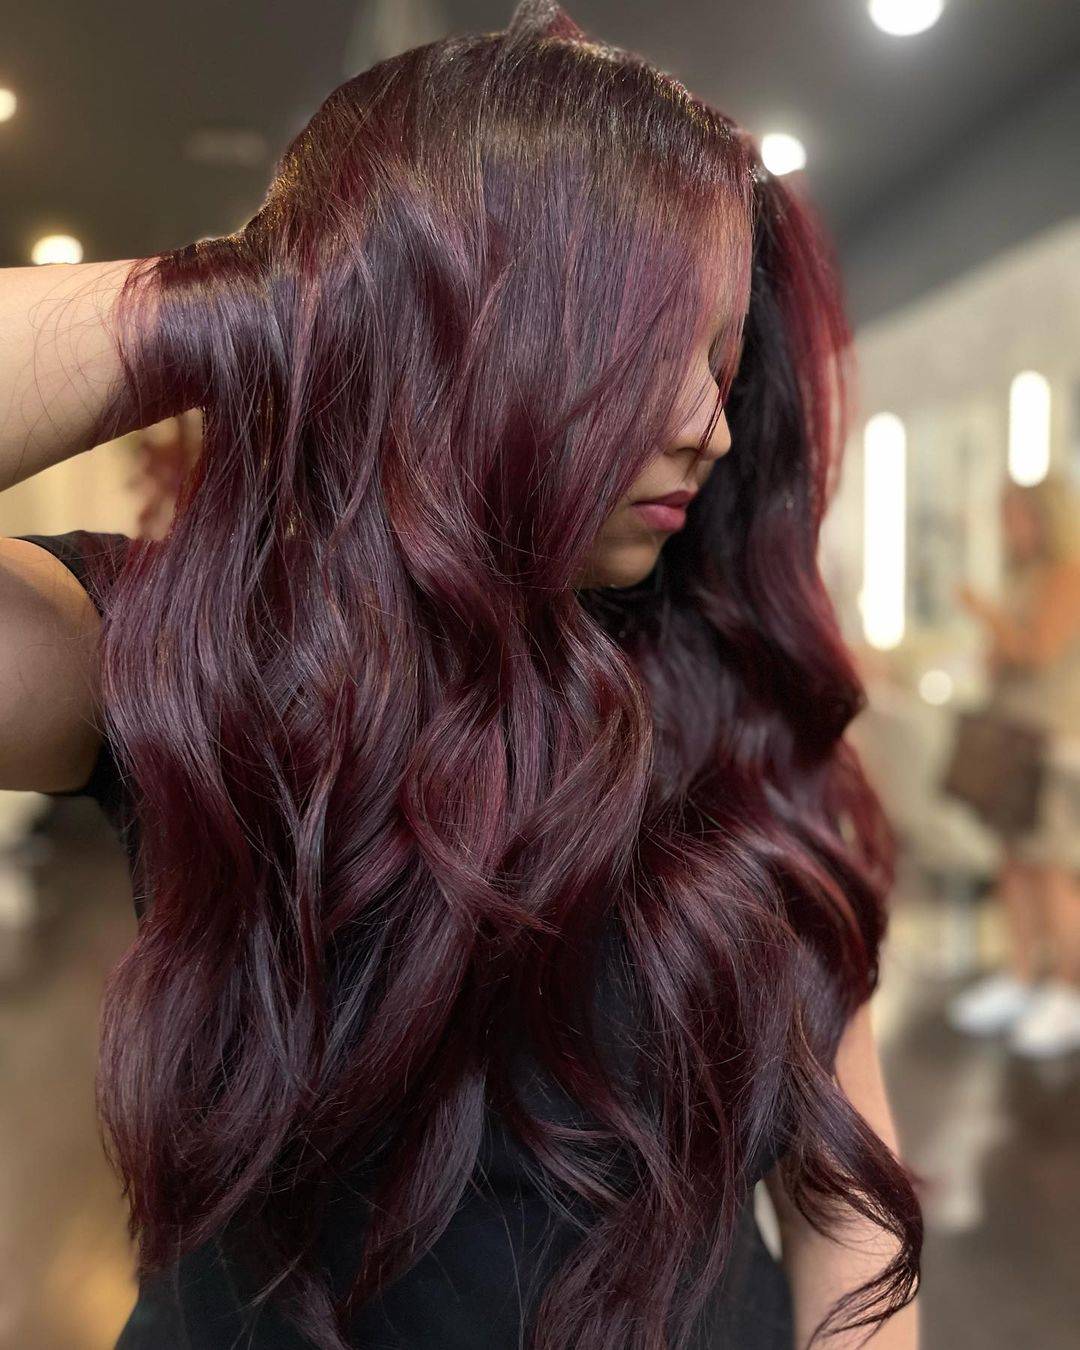 Burgundy hair color 379 burgundy hair color | burgundy hair color for women | burgundy hair color highlights Burgundy Hair Color